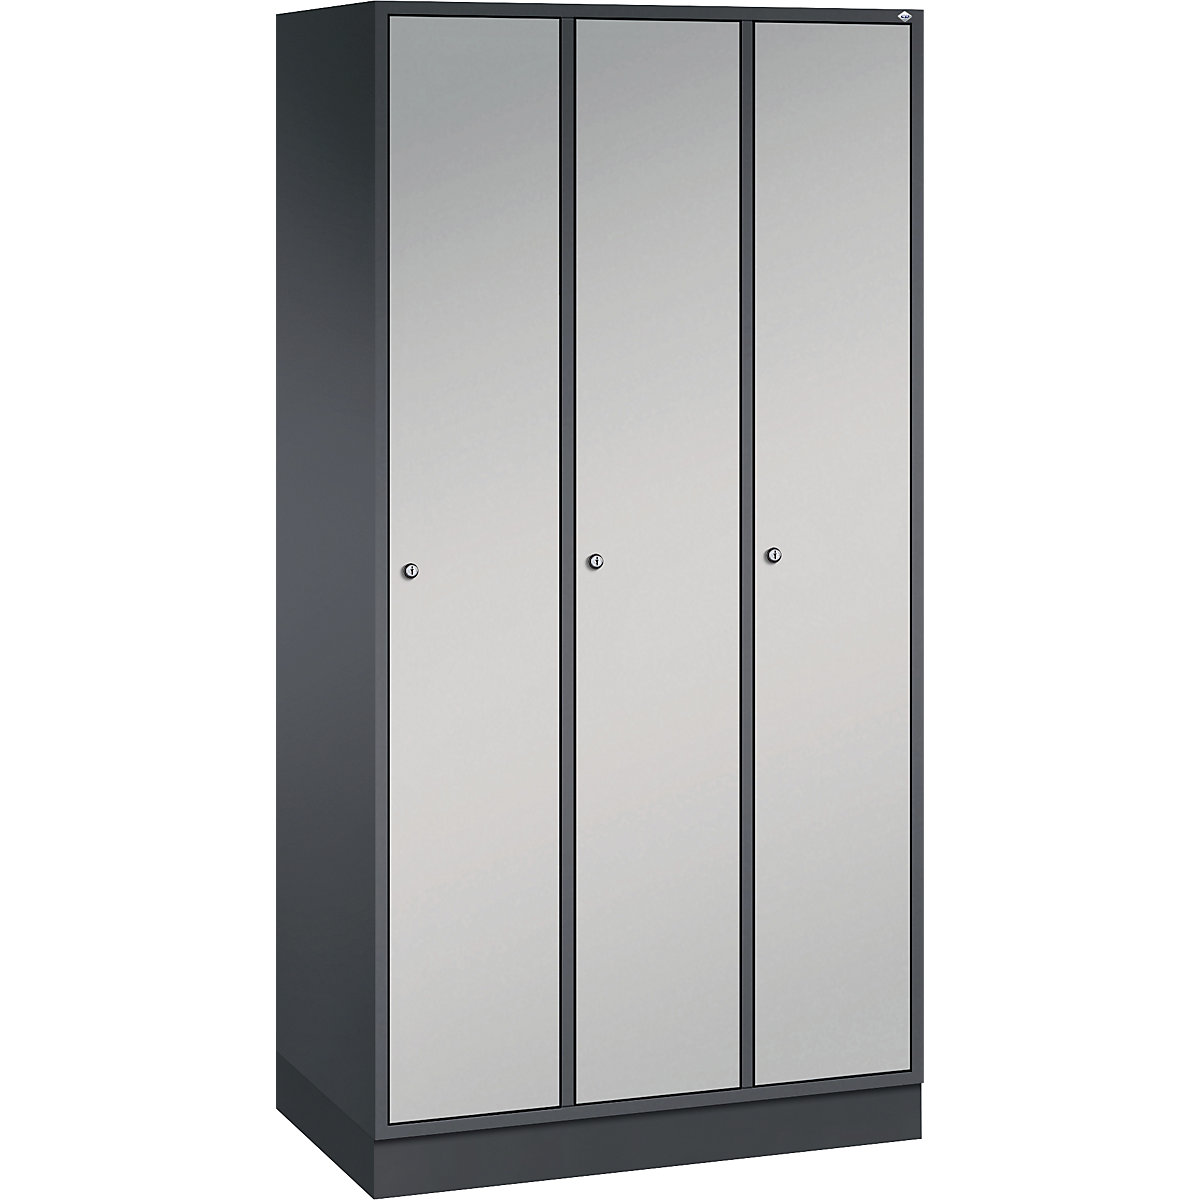 INTRO stalen garderobekast – C+P, breedte 920 mm, 3 afdelingen, kastframe zwartgrijs, deuren blank aluminiumkleurig-8